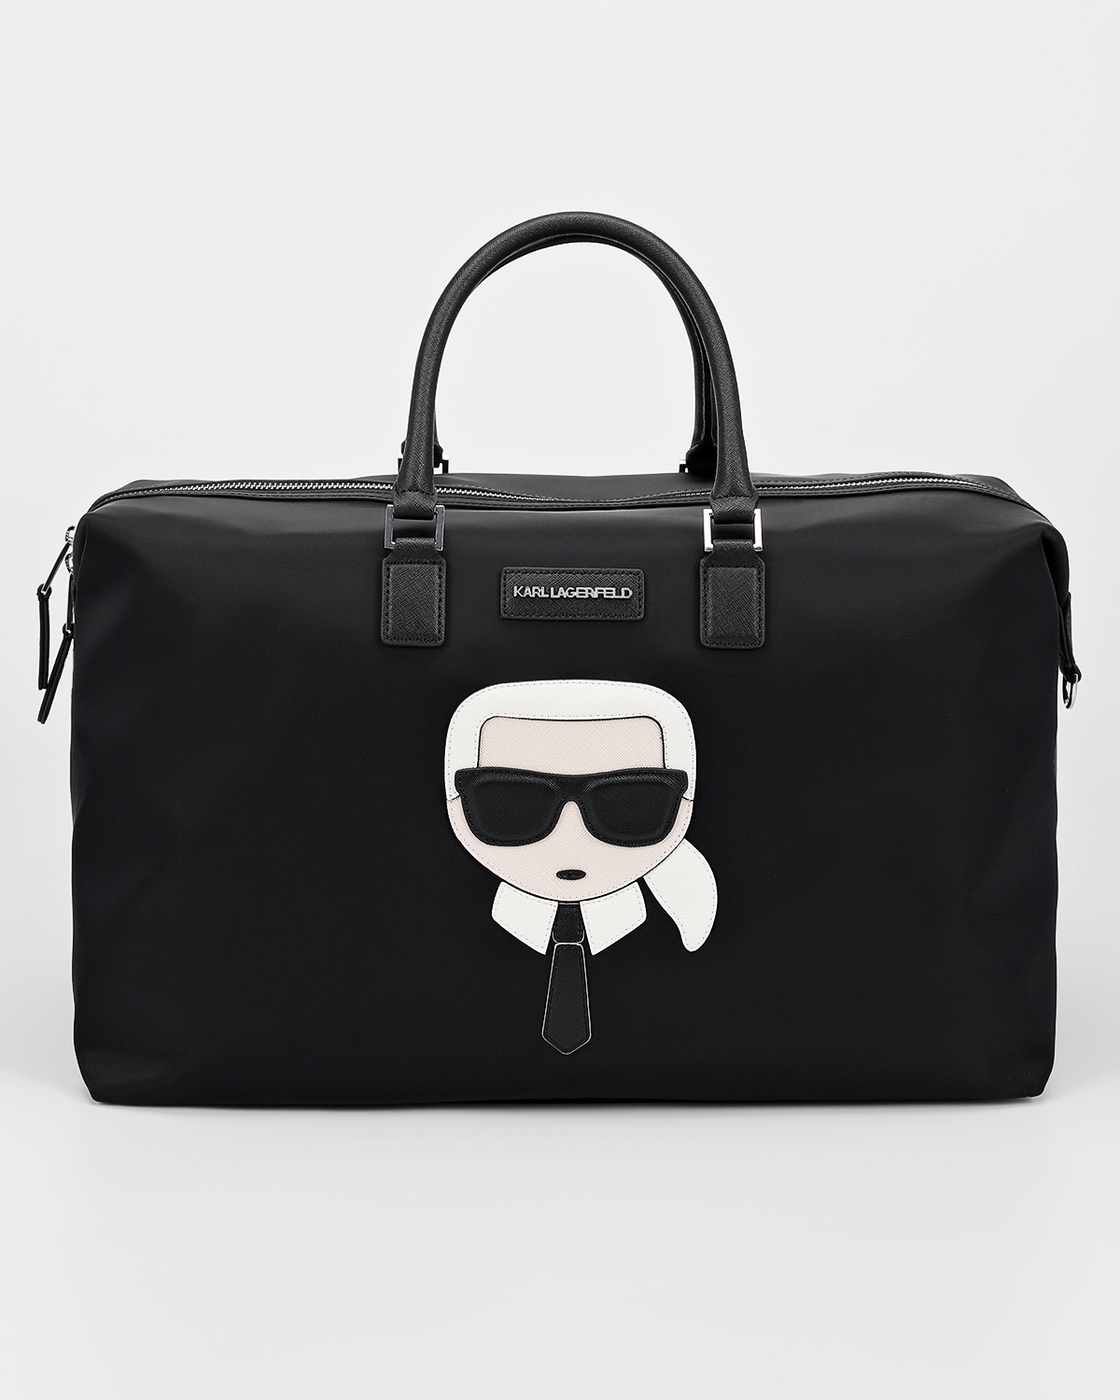 Karl Lagerfeld сумка дорожная ikonik